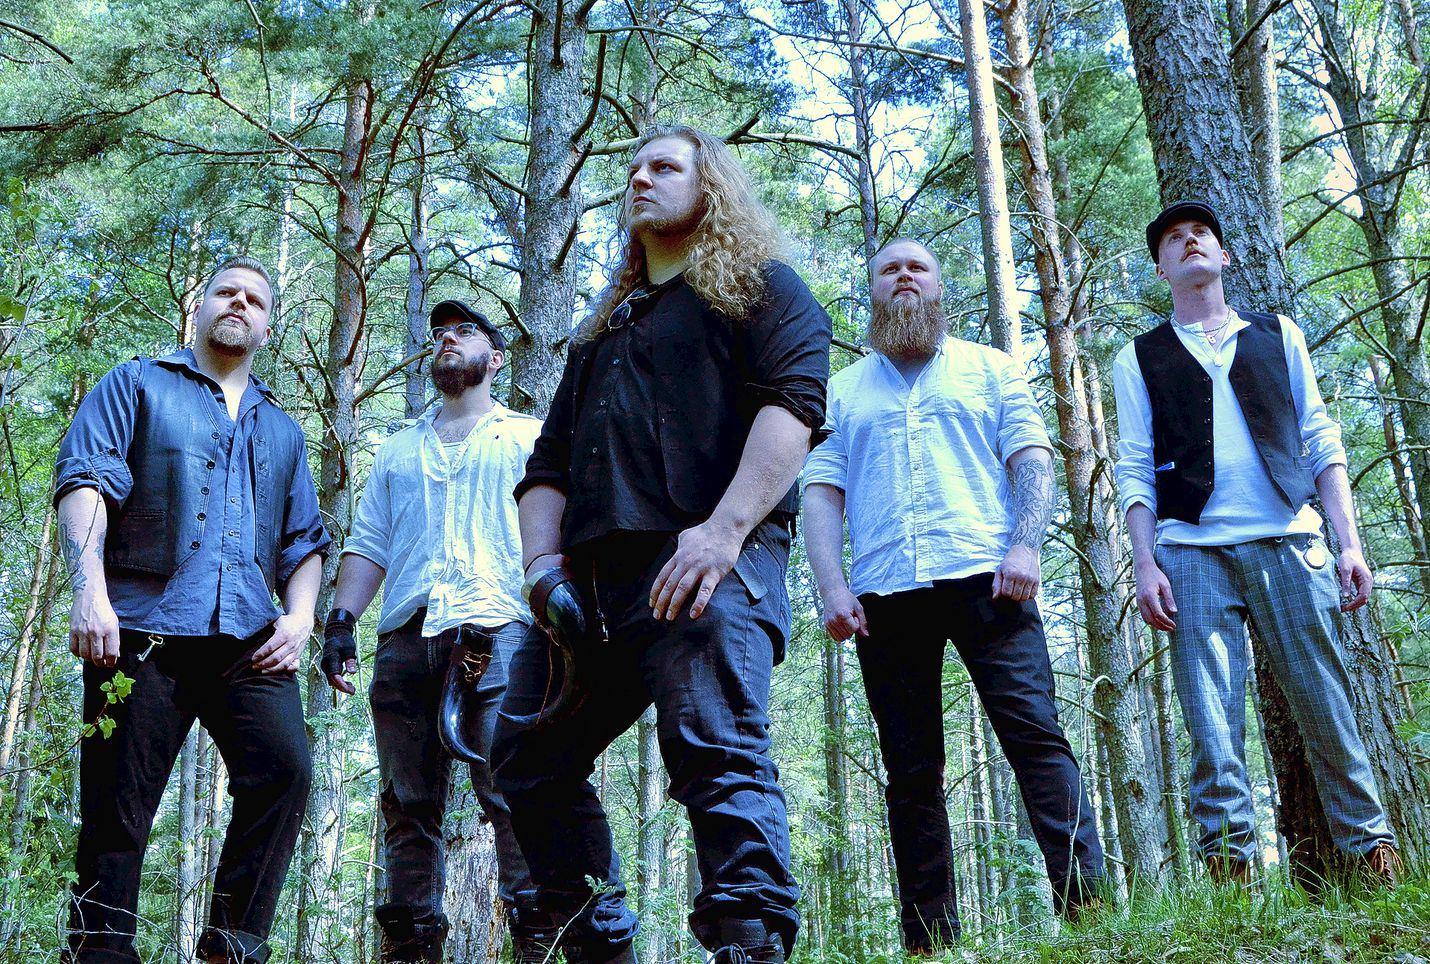 Raumalainen folk-metalli -yhtye Folkrim julkaisee toisen studioalbuminsa lokakuussa.